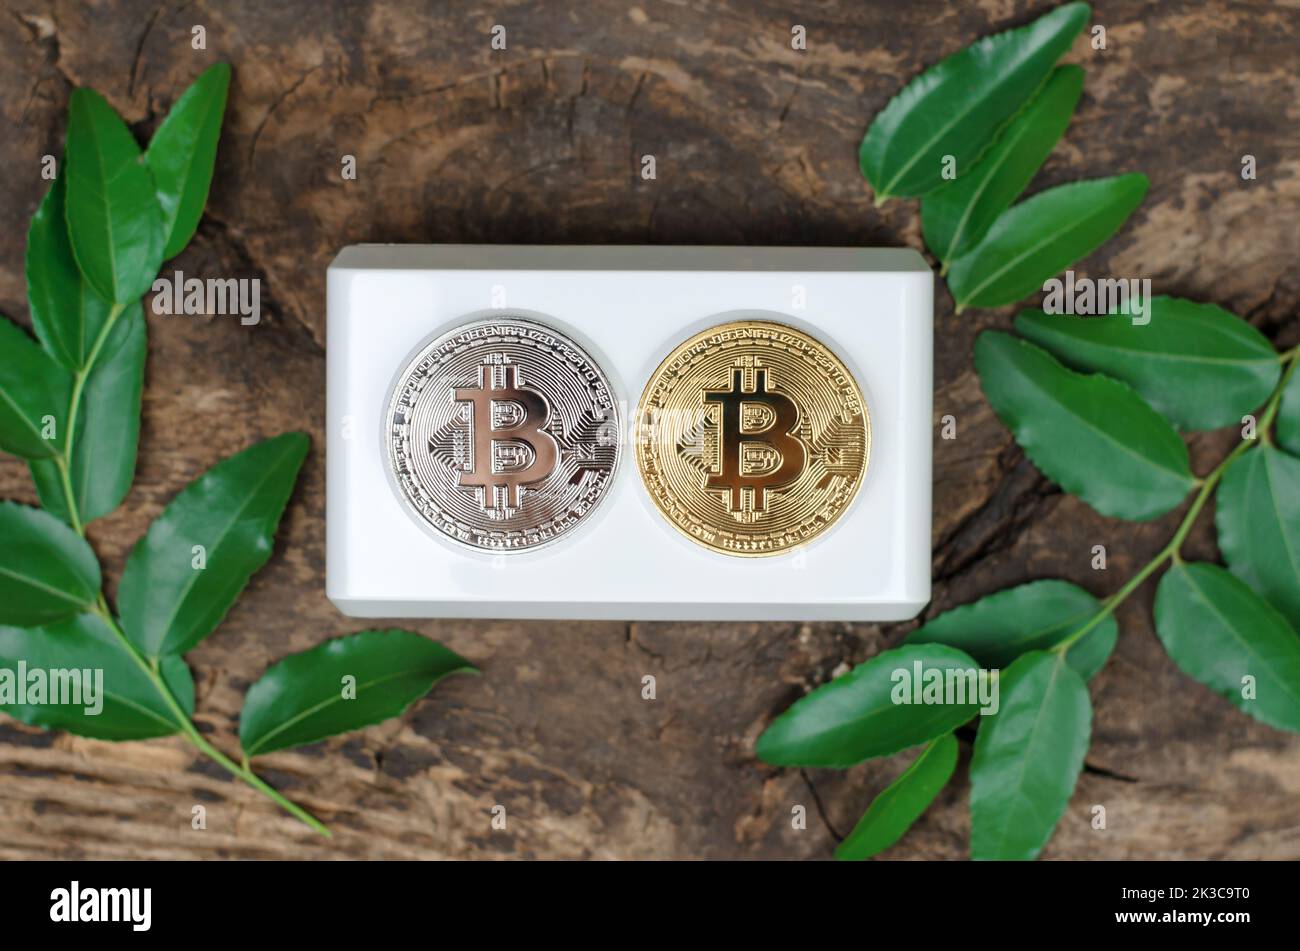 Bitcoin-Münzen liegen an einer Steckdose, die von grünen Blättern umrahmt ist. Kryptowährung und grüne Energie. Stockfoto